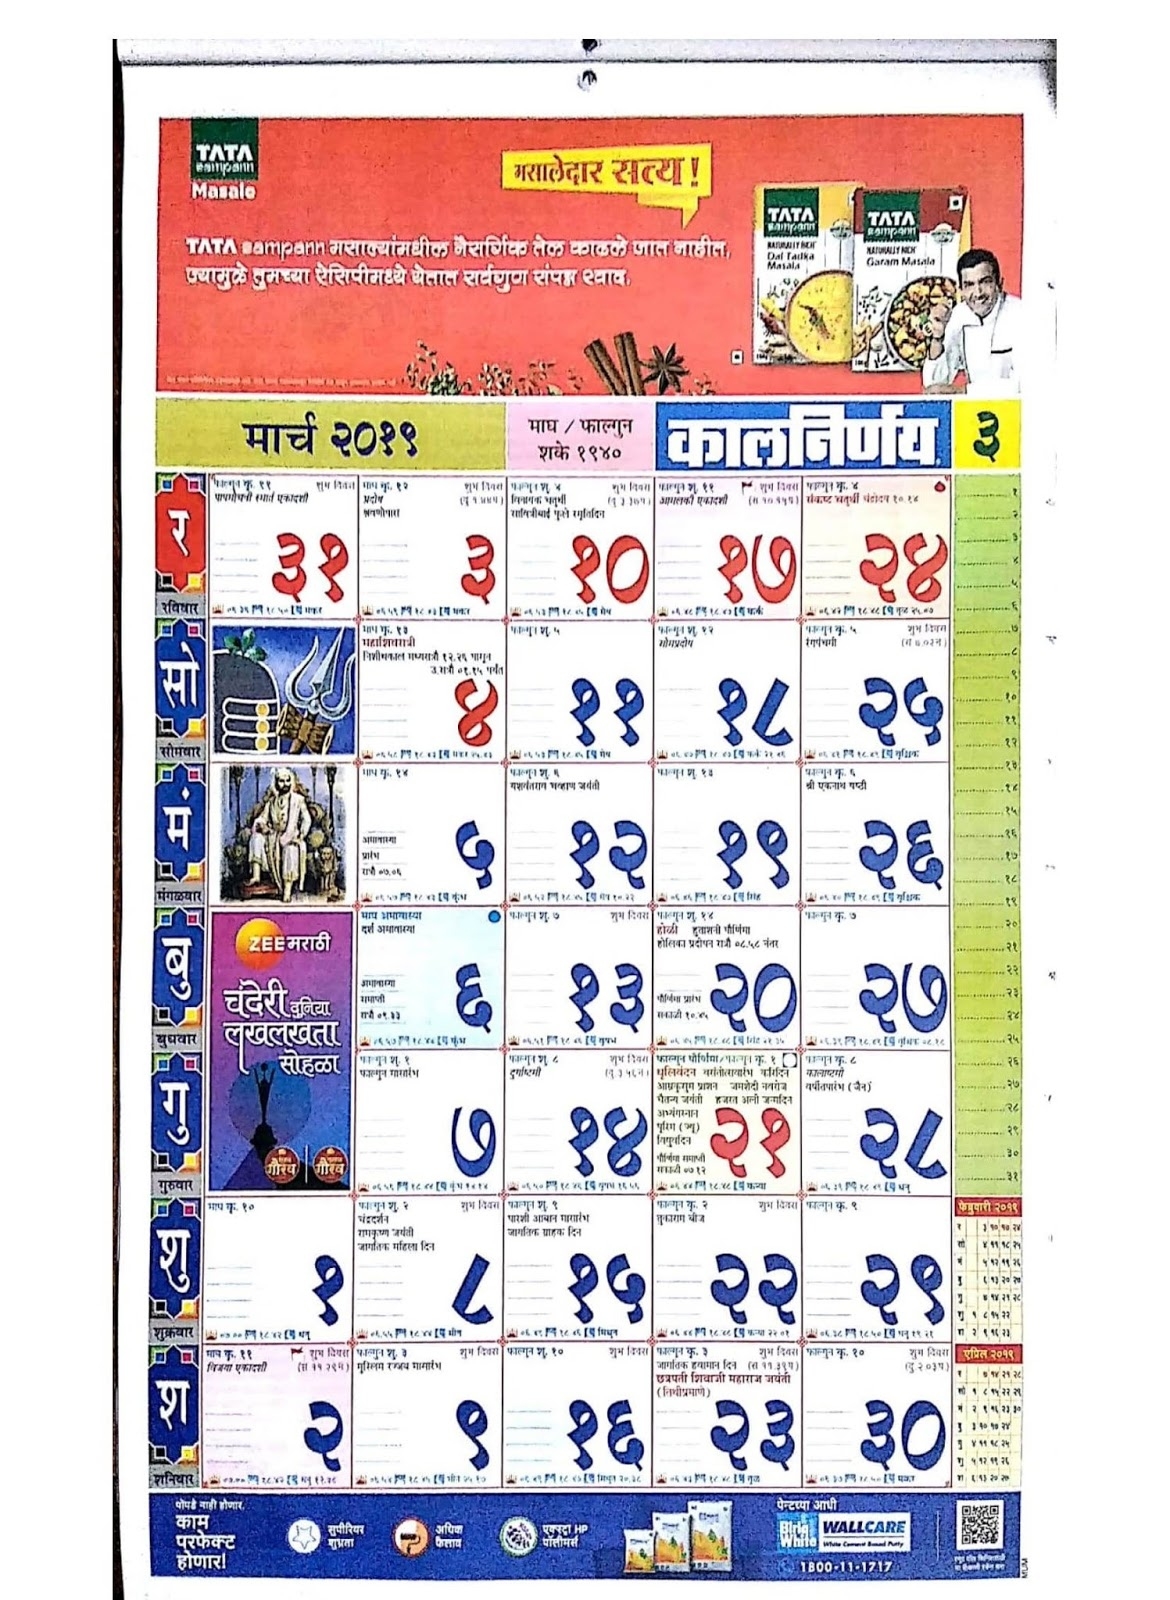 मराठी कालनिर्णय कॅलेंडर २०१९ - Marathi Kalnirnay Calendar 2019 - Marathi Calendar Pdf Free Kalnirnay November 2021 Marathi Calendar Pdf